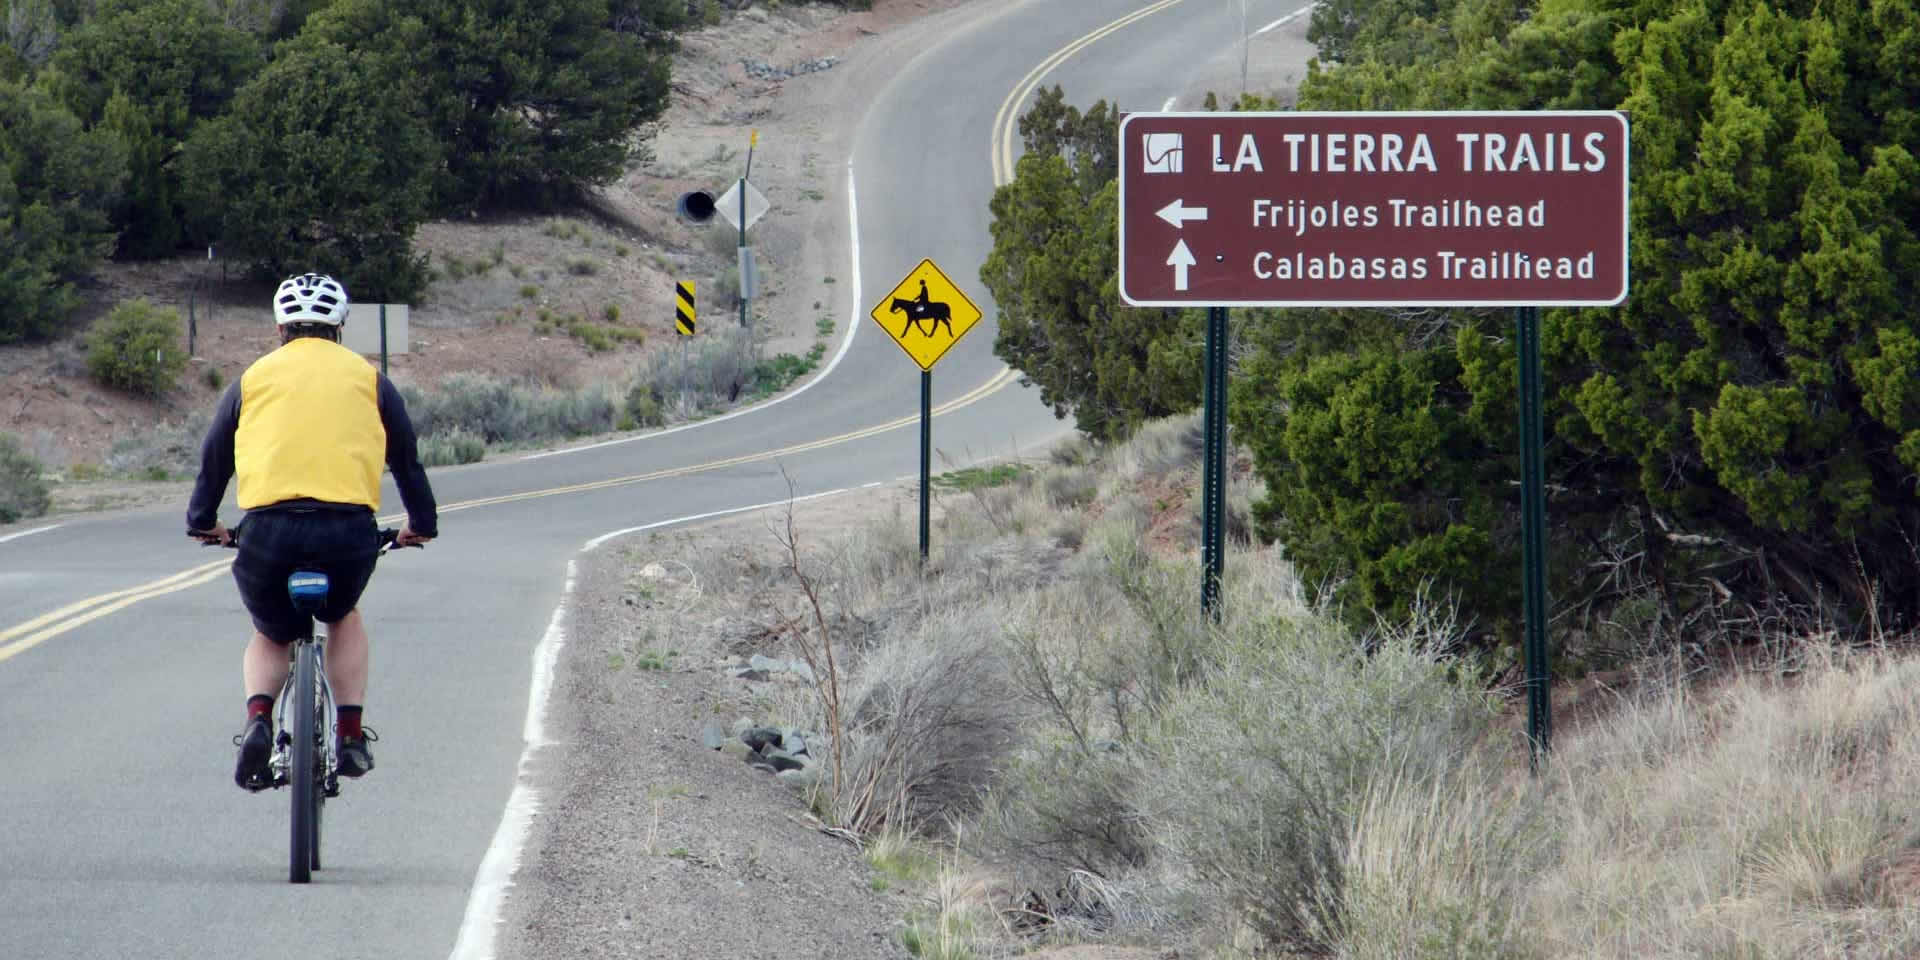 road-and-La-Tierra-sign-CIMG4950-crop